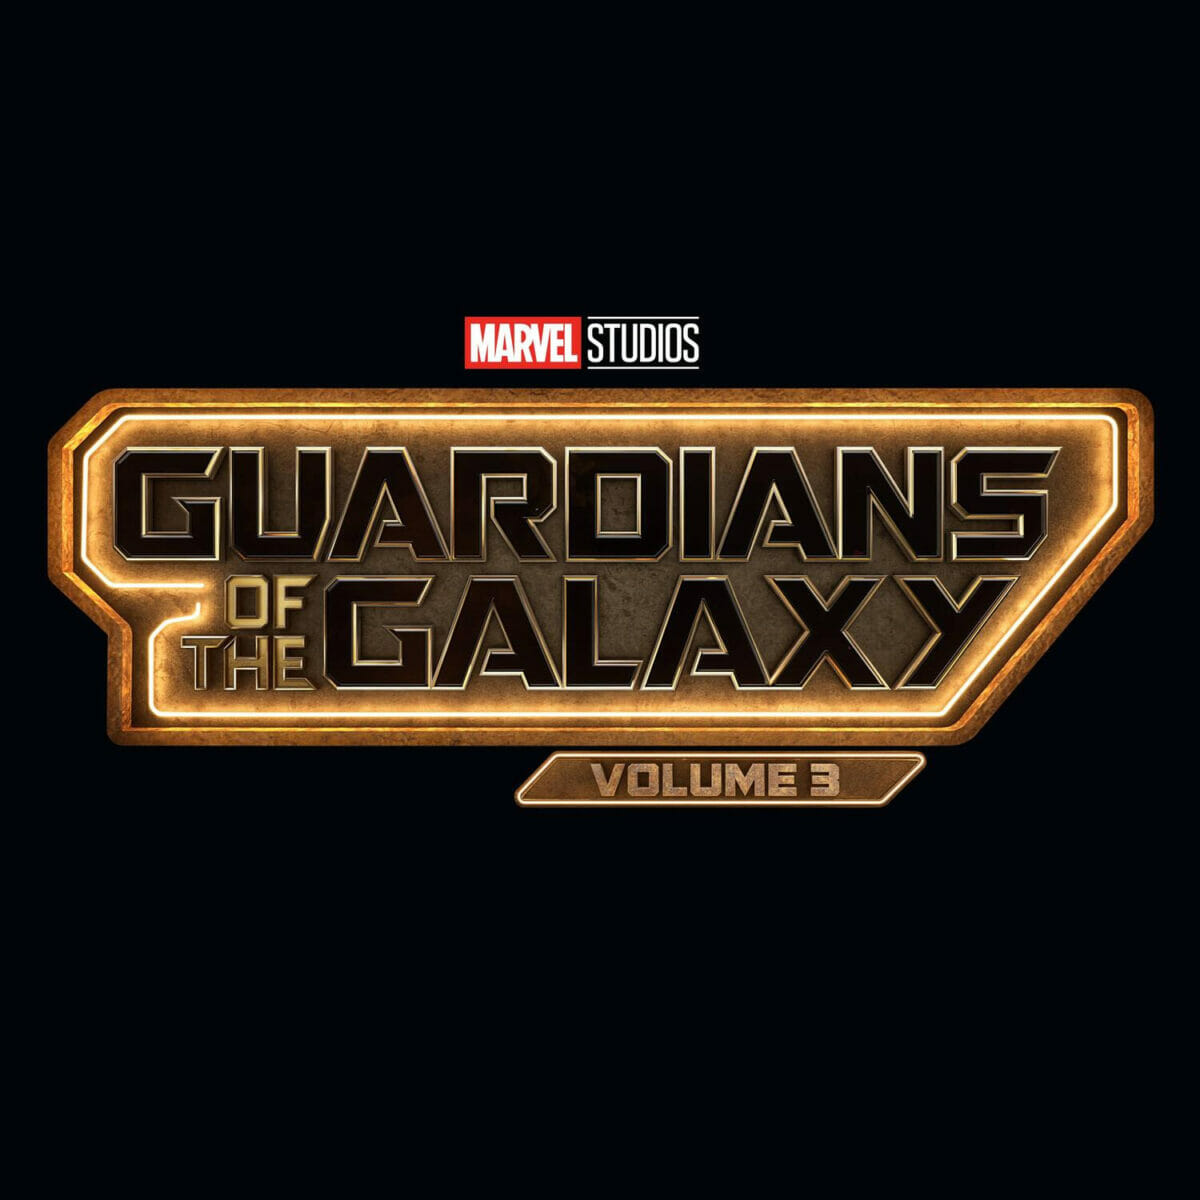 Guardiões da Galáxia: Vol. 3 - 4 de Maio de 2023